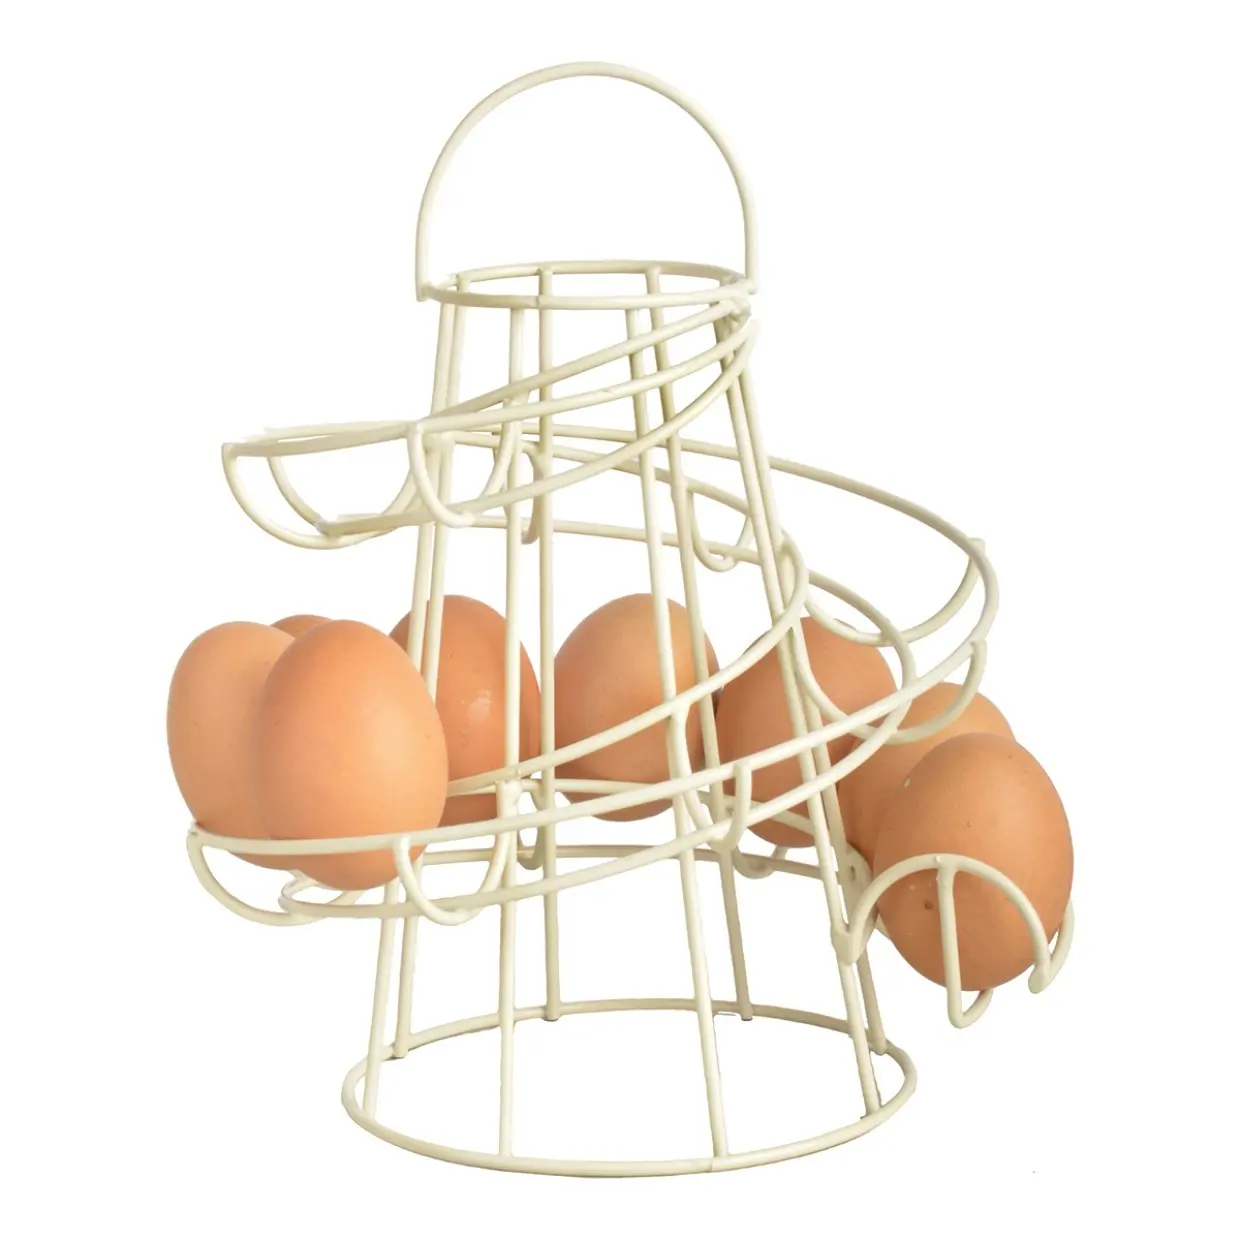 Penjualan terbaru terbaru penjualan laris tempat penyimpanan telur Gaya unik dengan pegangan logam keranjang telur ayam dalam desain Spiral putih